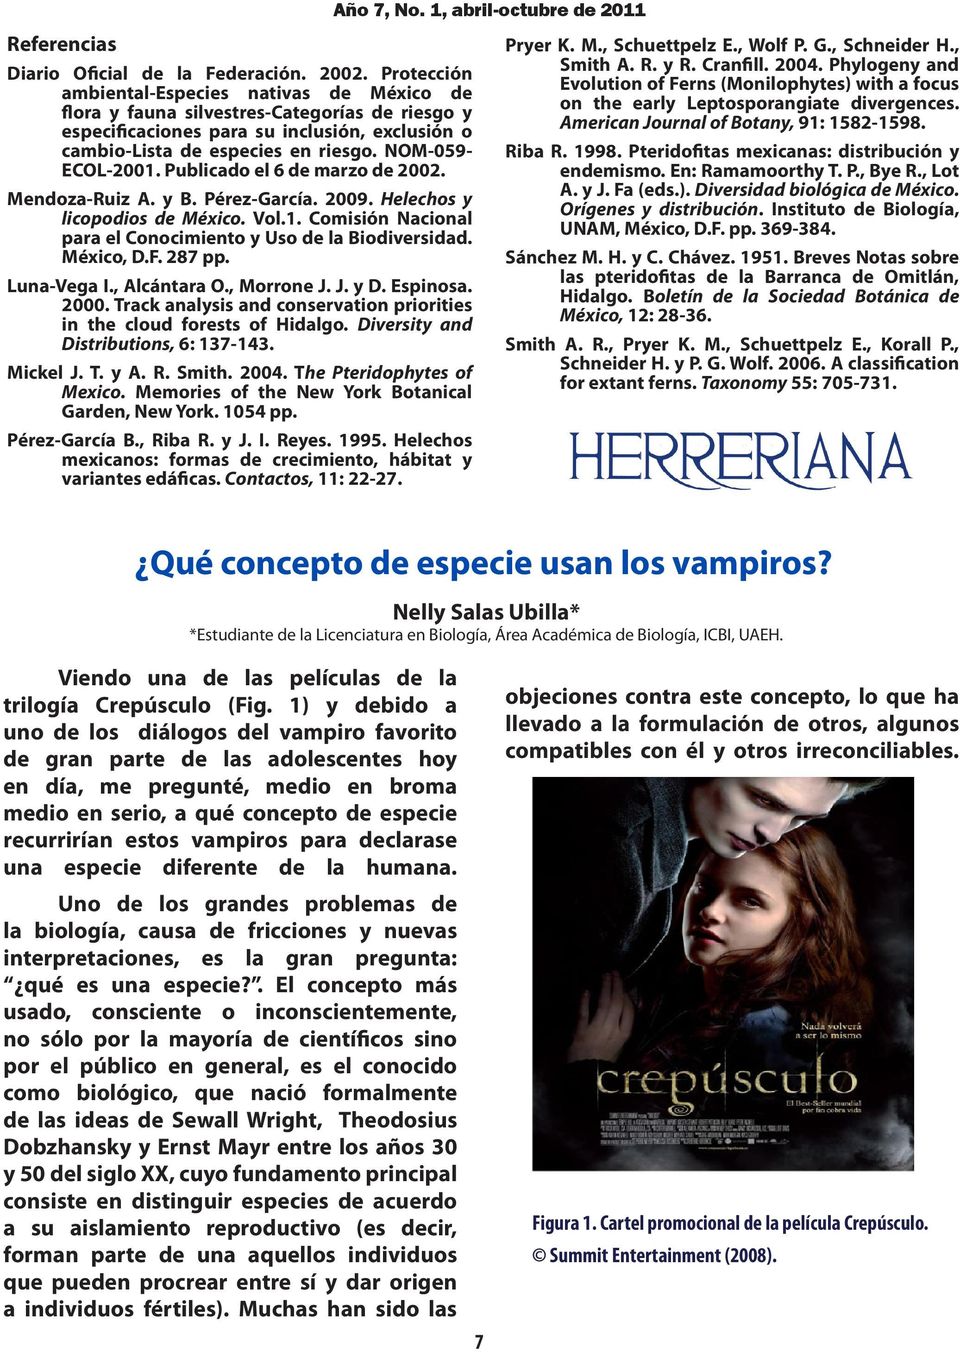 NOM-059- ECOL-2001. Publicado el 6 de marzo de 2002. Mendoza-Ruiz A. y B. Pérez-García. 2009. Helechos y licopodios de México. Vol.1. Comisión Nacional para el Conocimiento y Uso de la Biodiversidad.